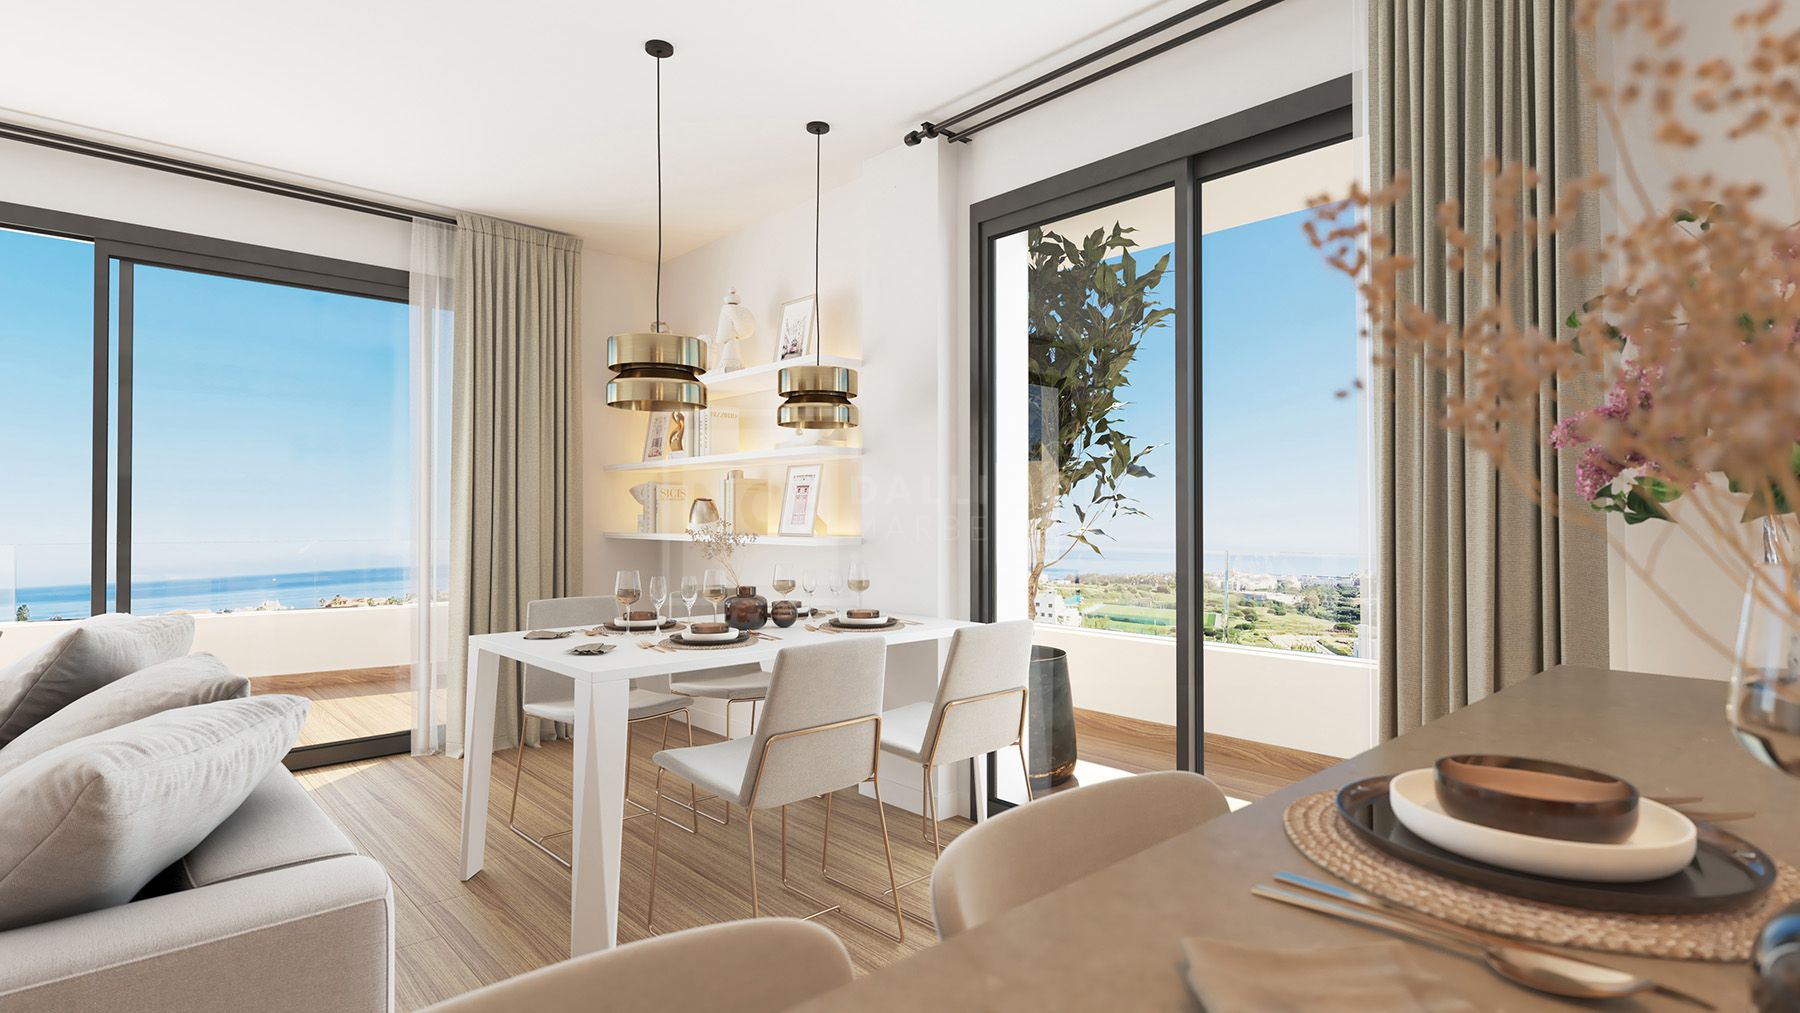 ONE80 Suites, apartamentos de diseño vanguardista y vistas al mar en Estepona.